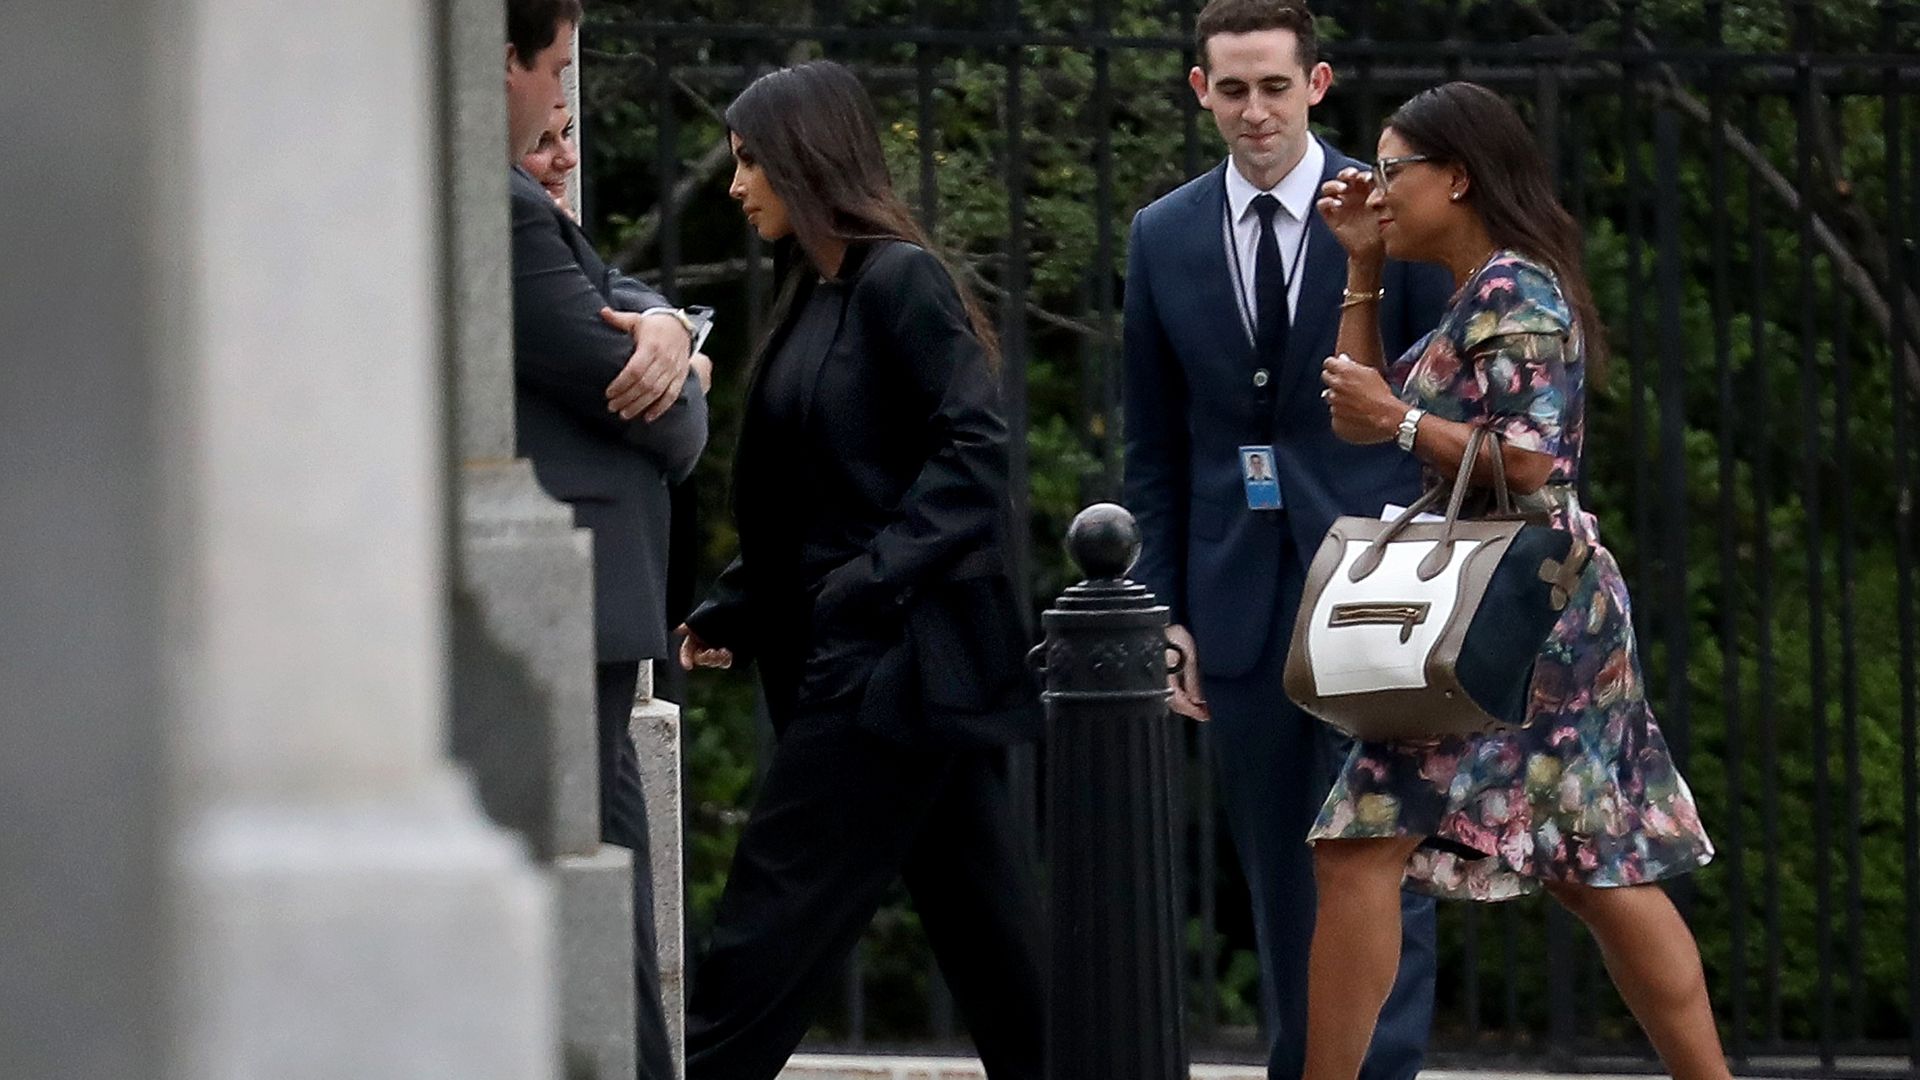 Kim Kardashian entering the White House